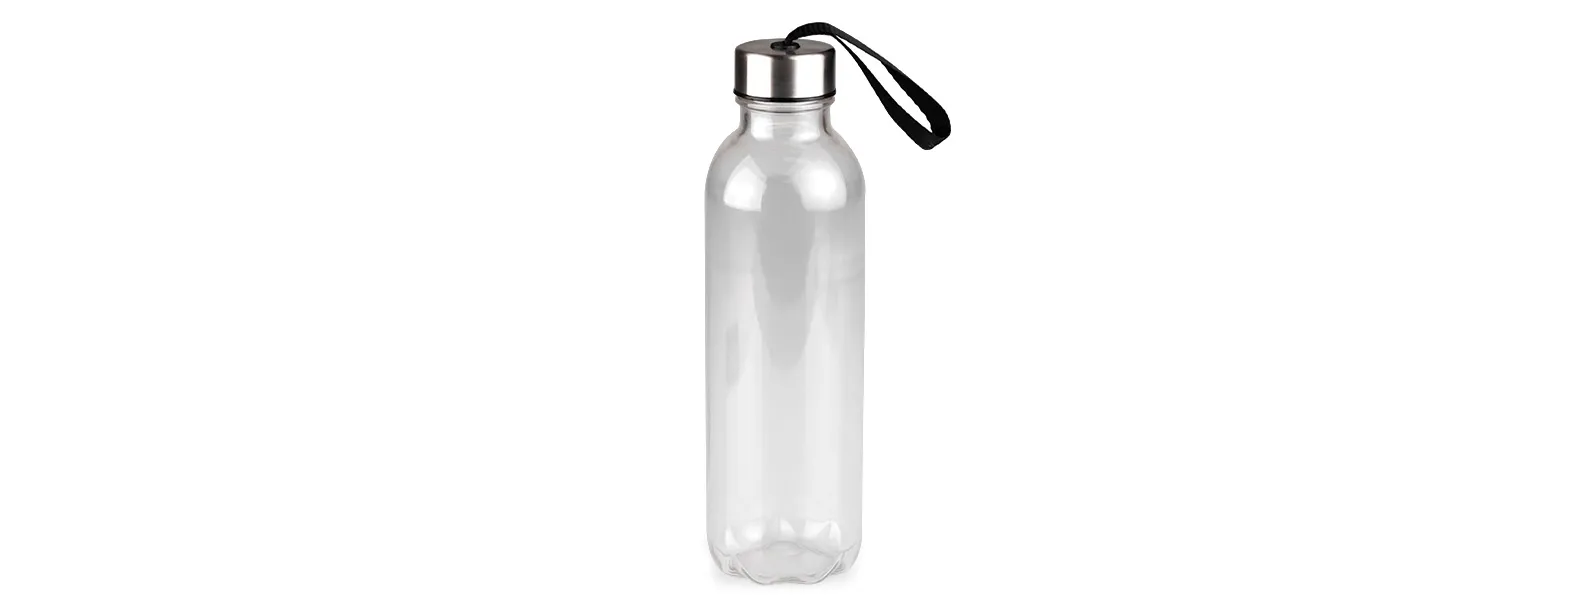 Kit boas vindas. Conta com mochila em nylon 420 branca; garrafa pet transparente e braçadeira esportiva para celular.